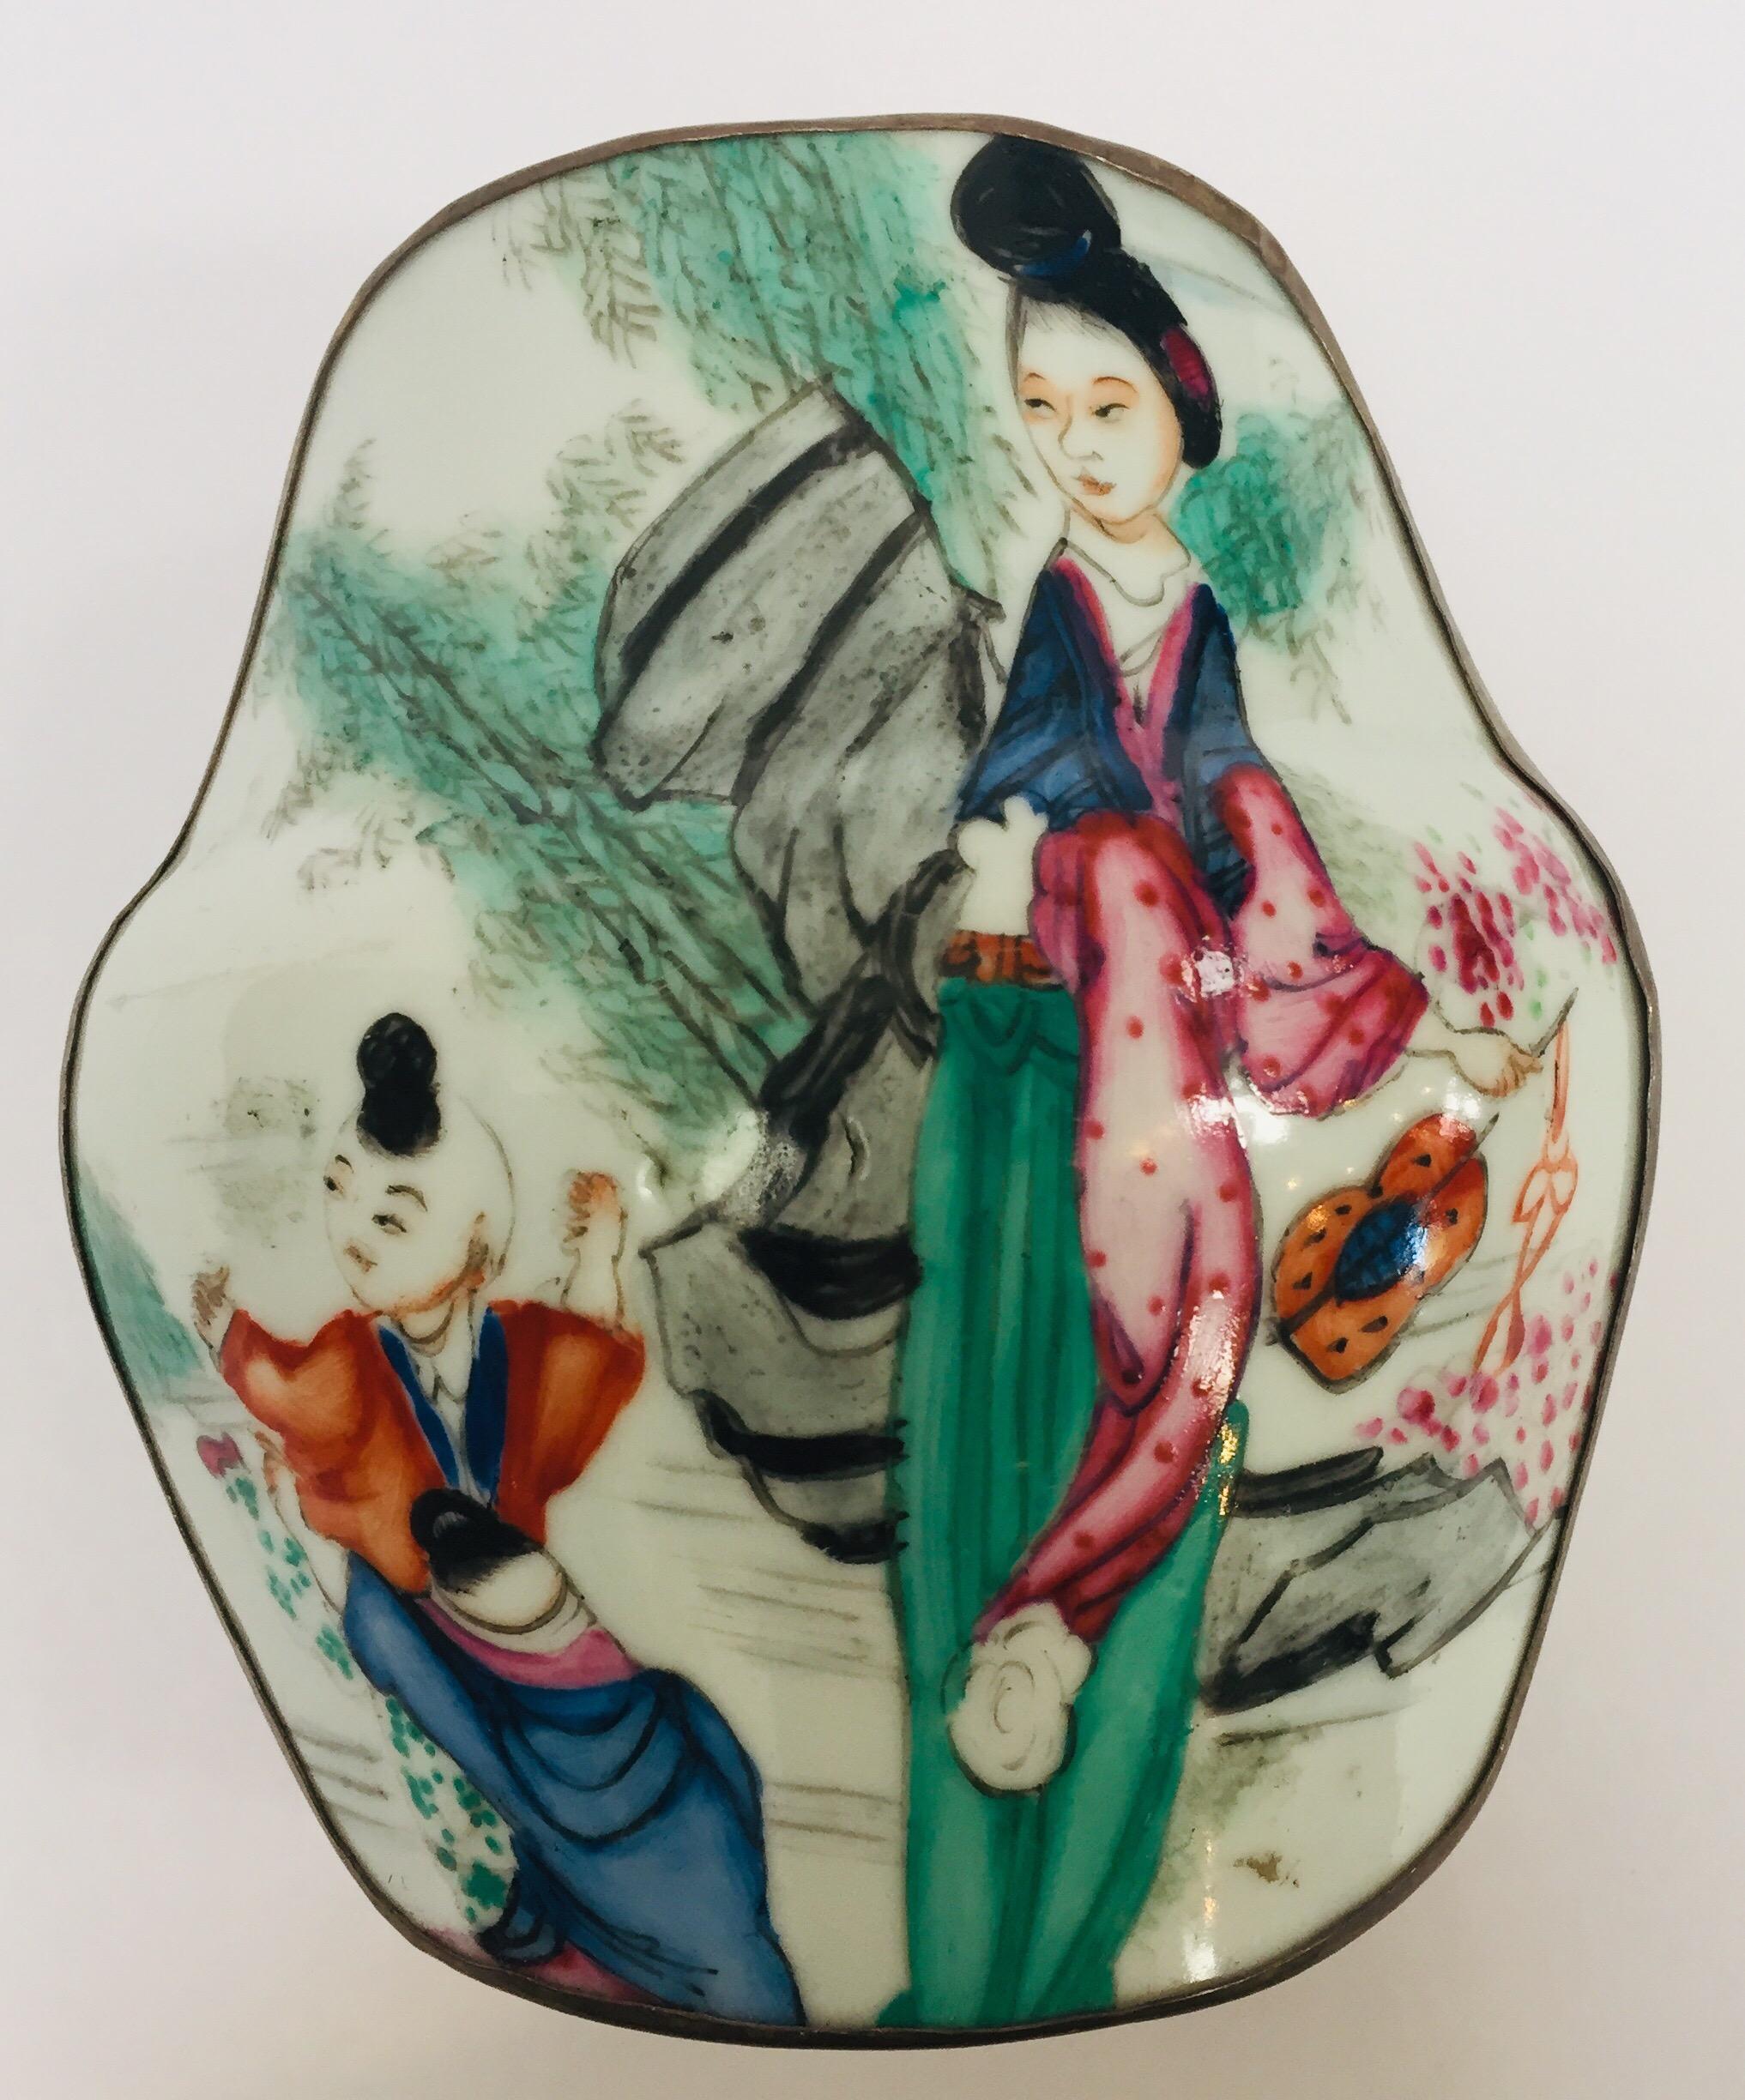 Vieille boîte à bijoux en métal et porcelaine avec une scène japonaise asiatique peinte à la main.
Métal argenté avec dessus en porcelaine peint à la main avec une scène d'extérieur avec une mère et un enfant portant des kimonos traditionnels dans